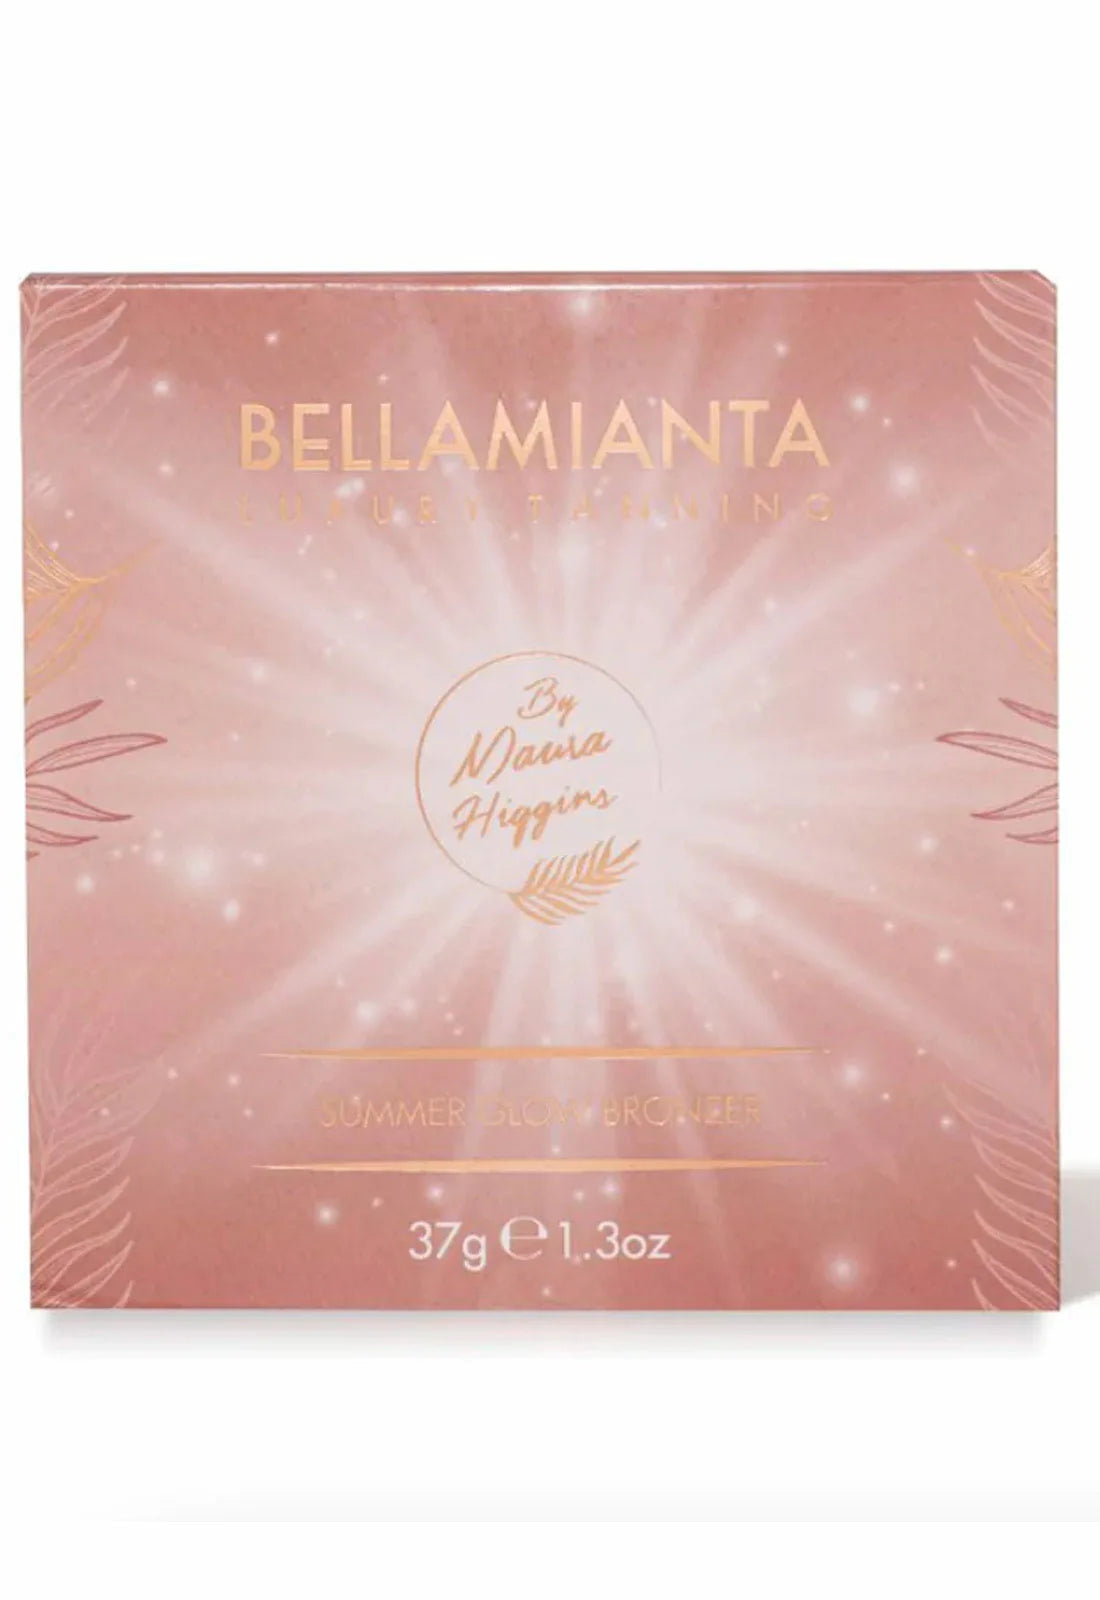 Bellamianta by Maura Higgins Summer Glow Bronzer-114955